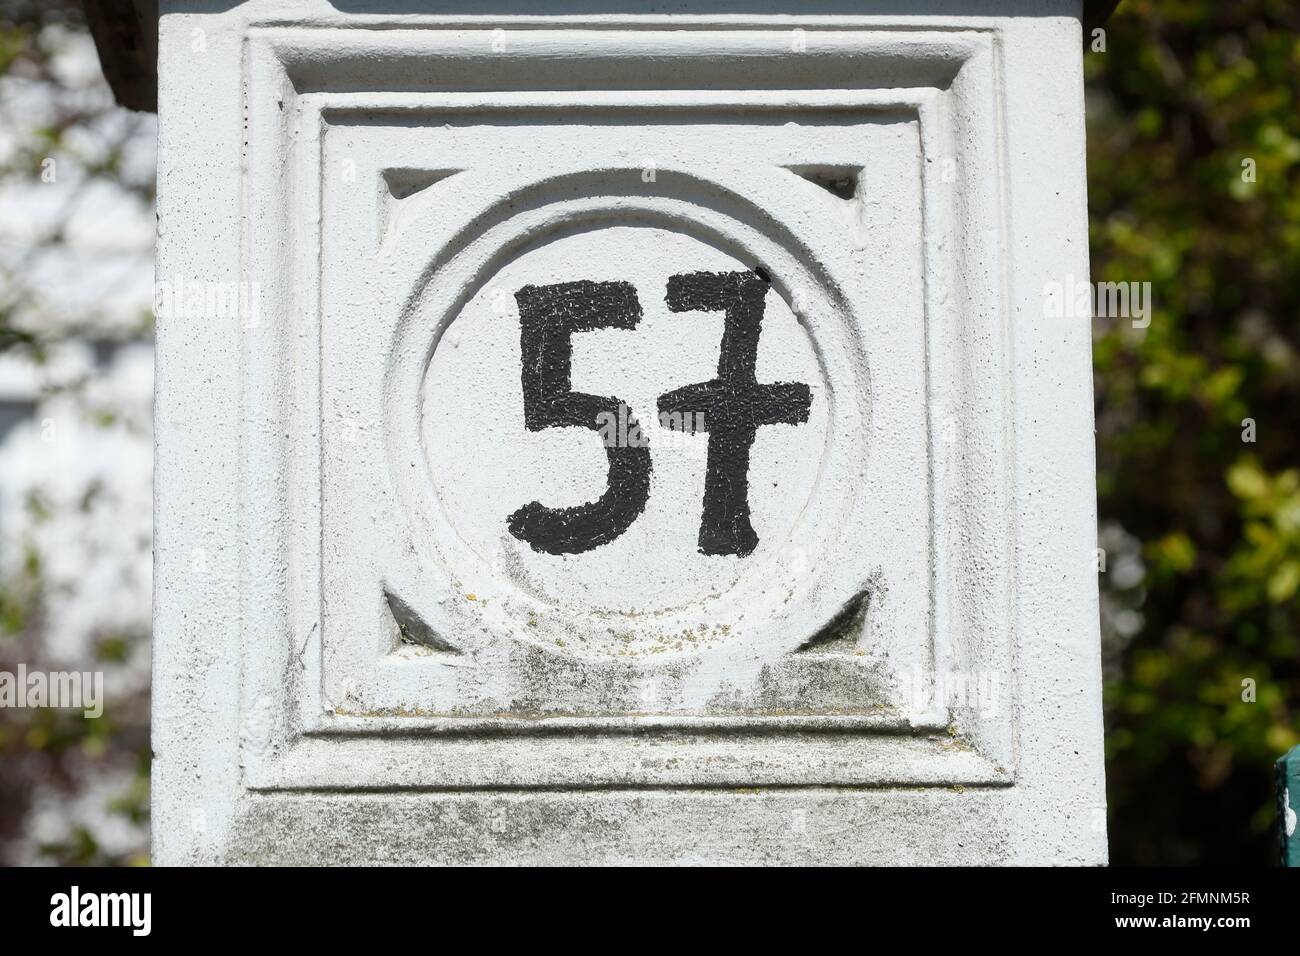 Schwarzes Hausnummernschild Nr. 57 auf weissem Untergrund, Deutschland, Europa Banque D'Images